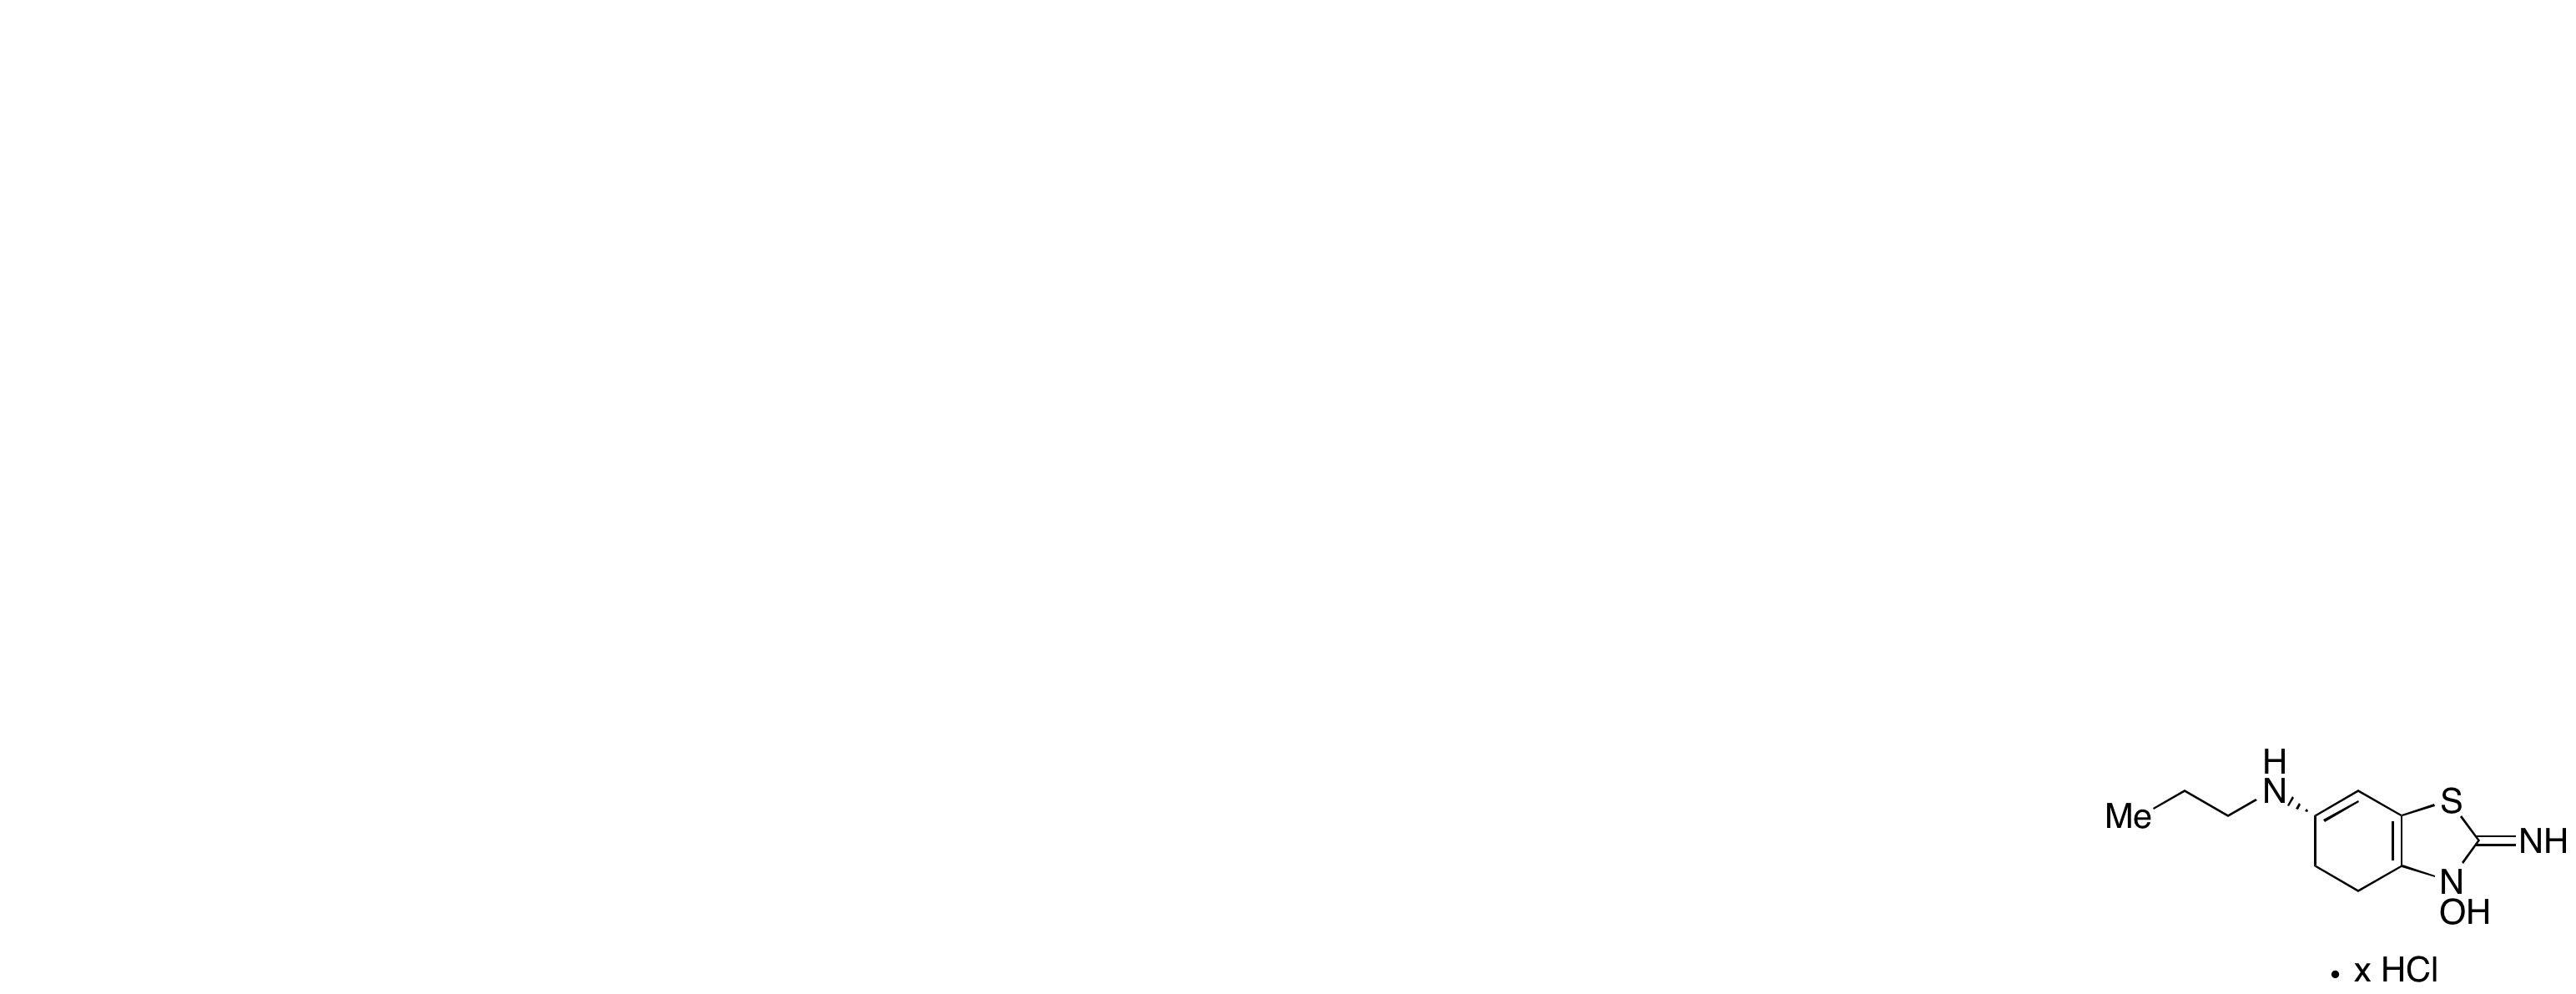 N1-Hydroxy (S)-Pramipexole Hydrochloride